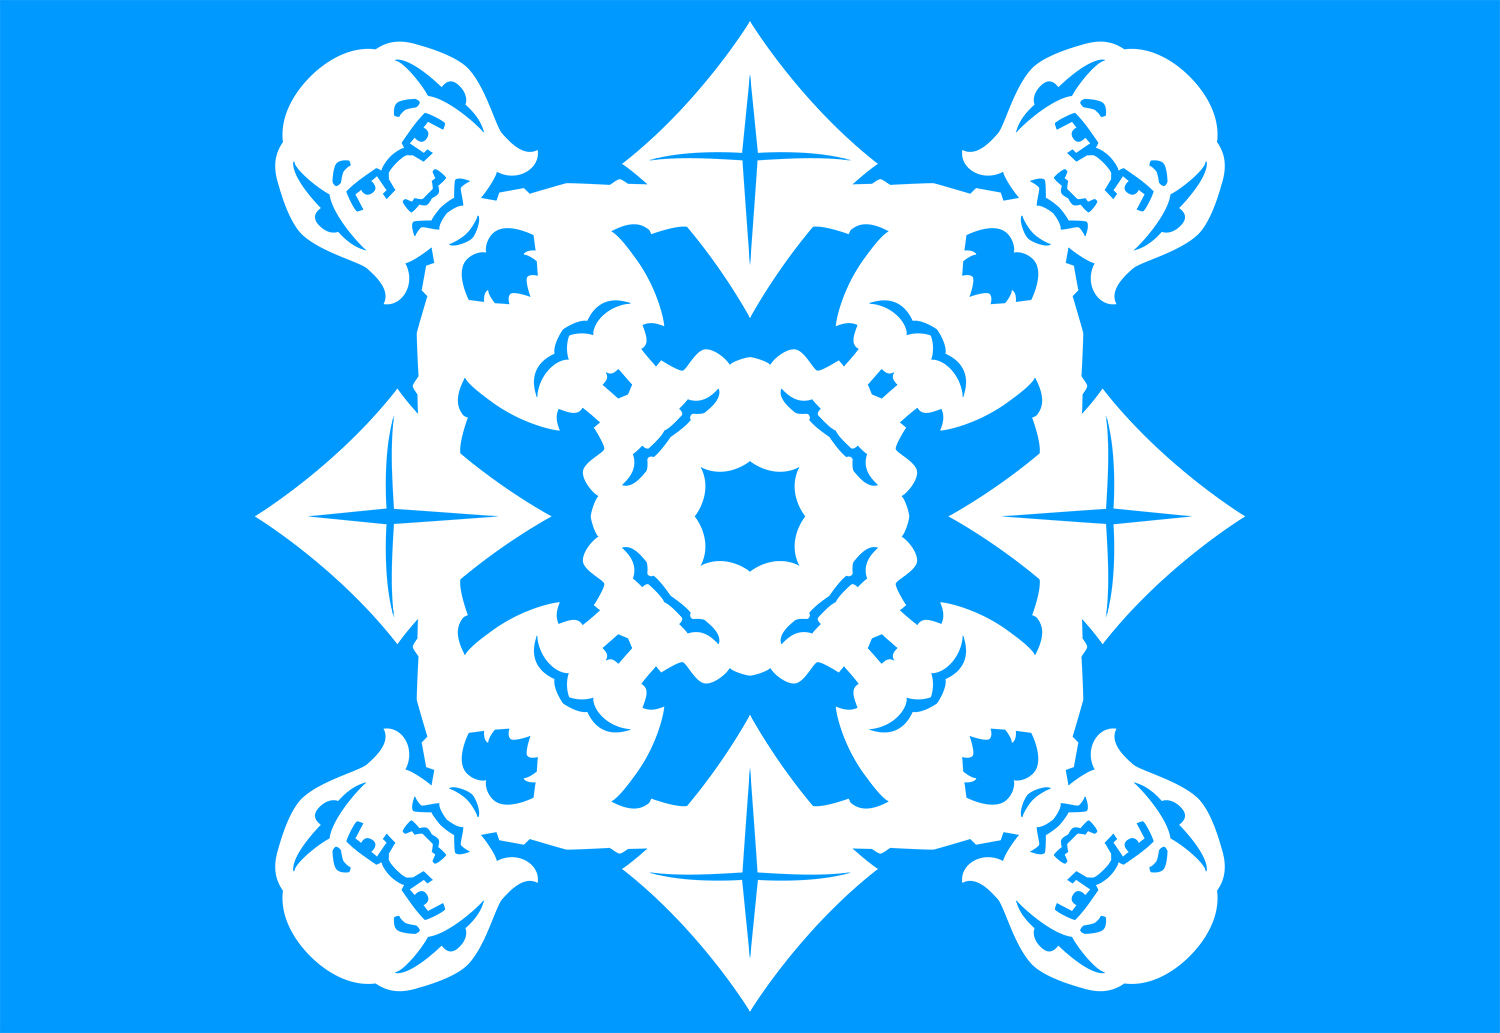 Benjamin Franklin with Kite Snowflake Design